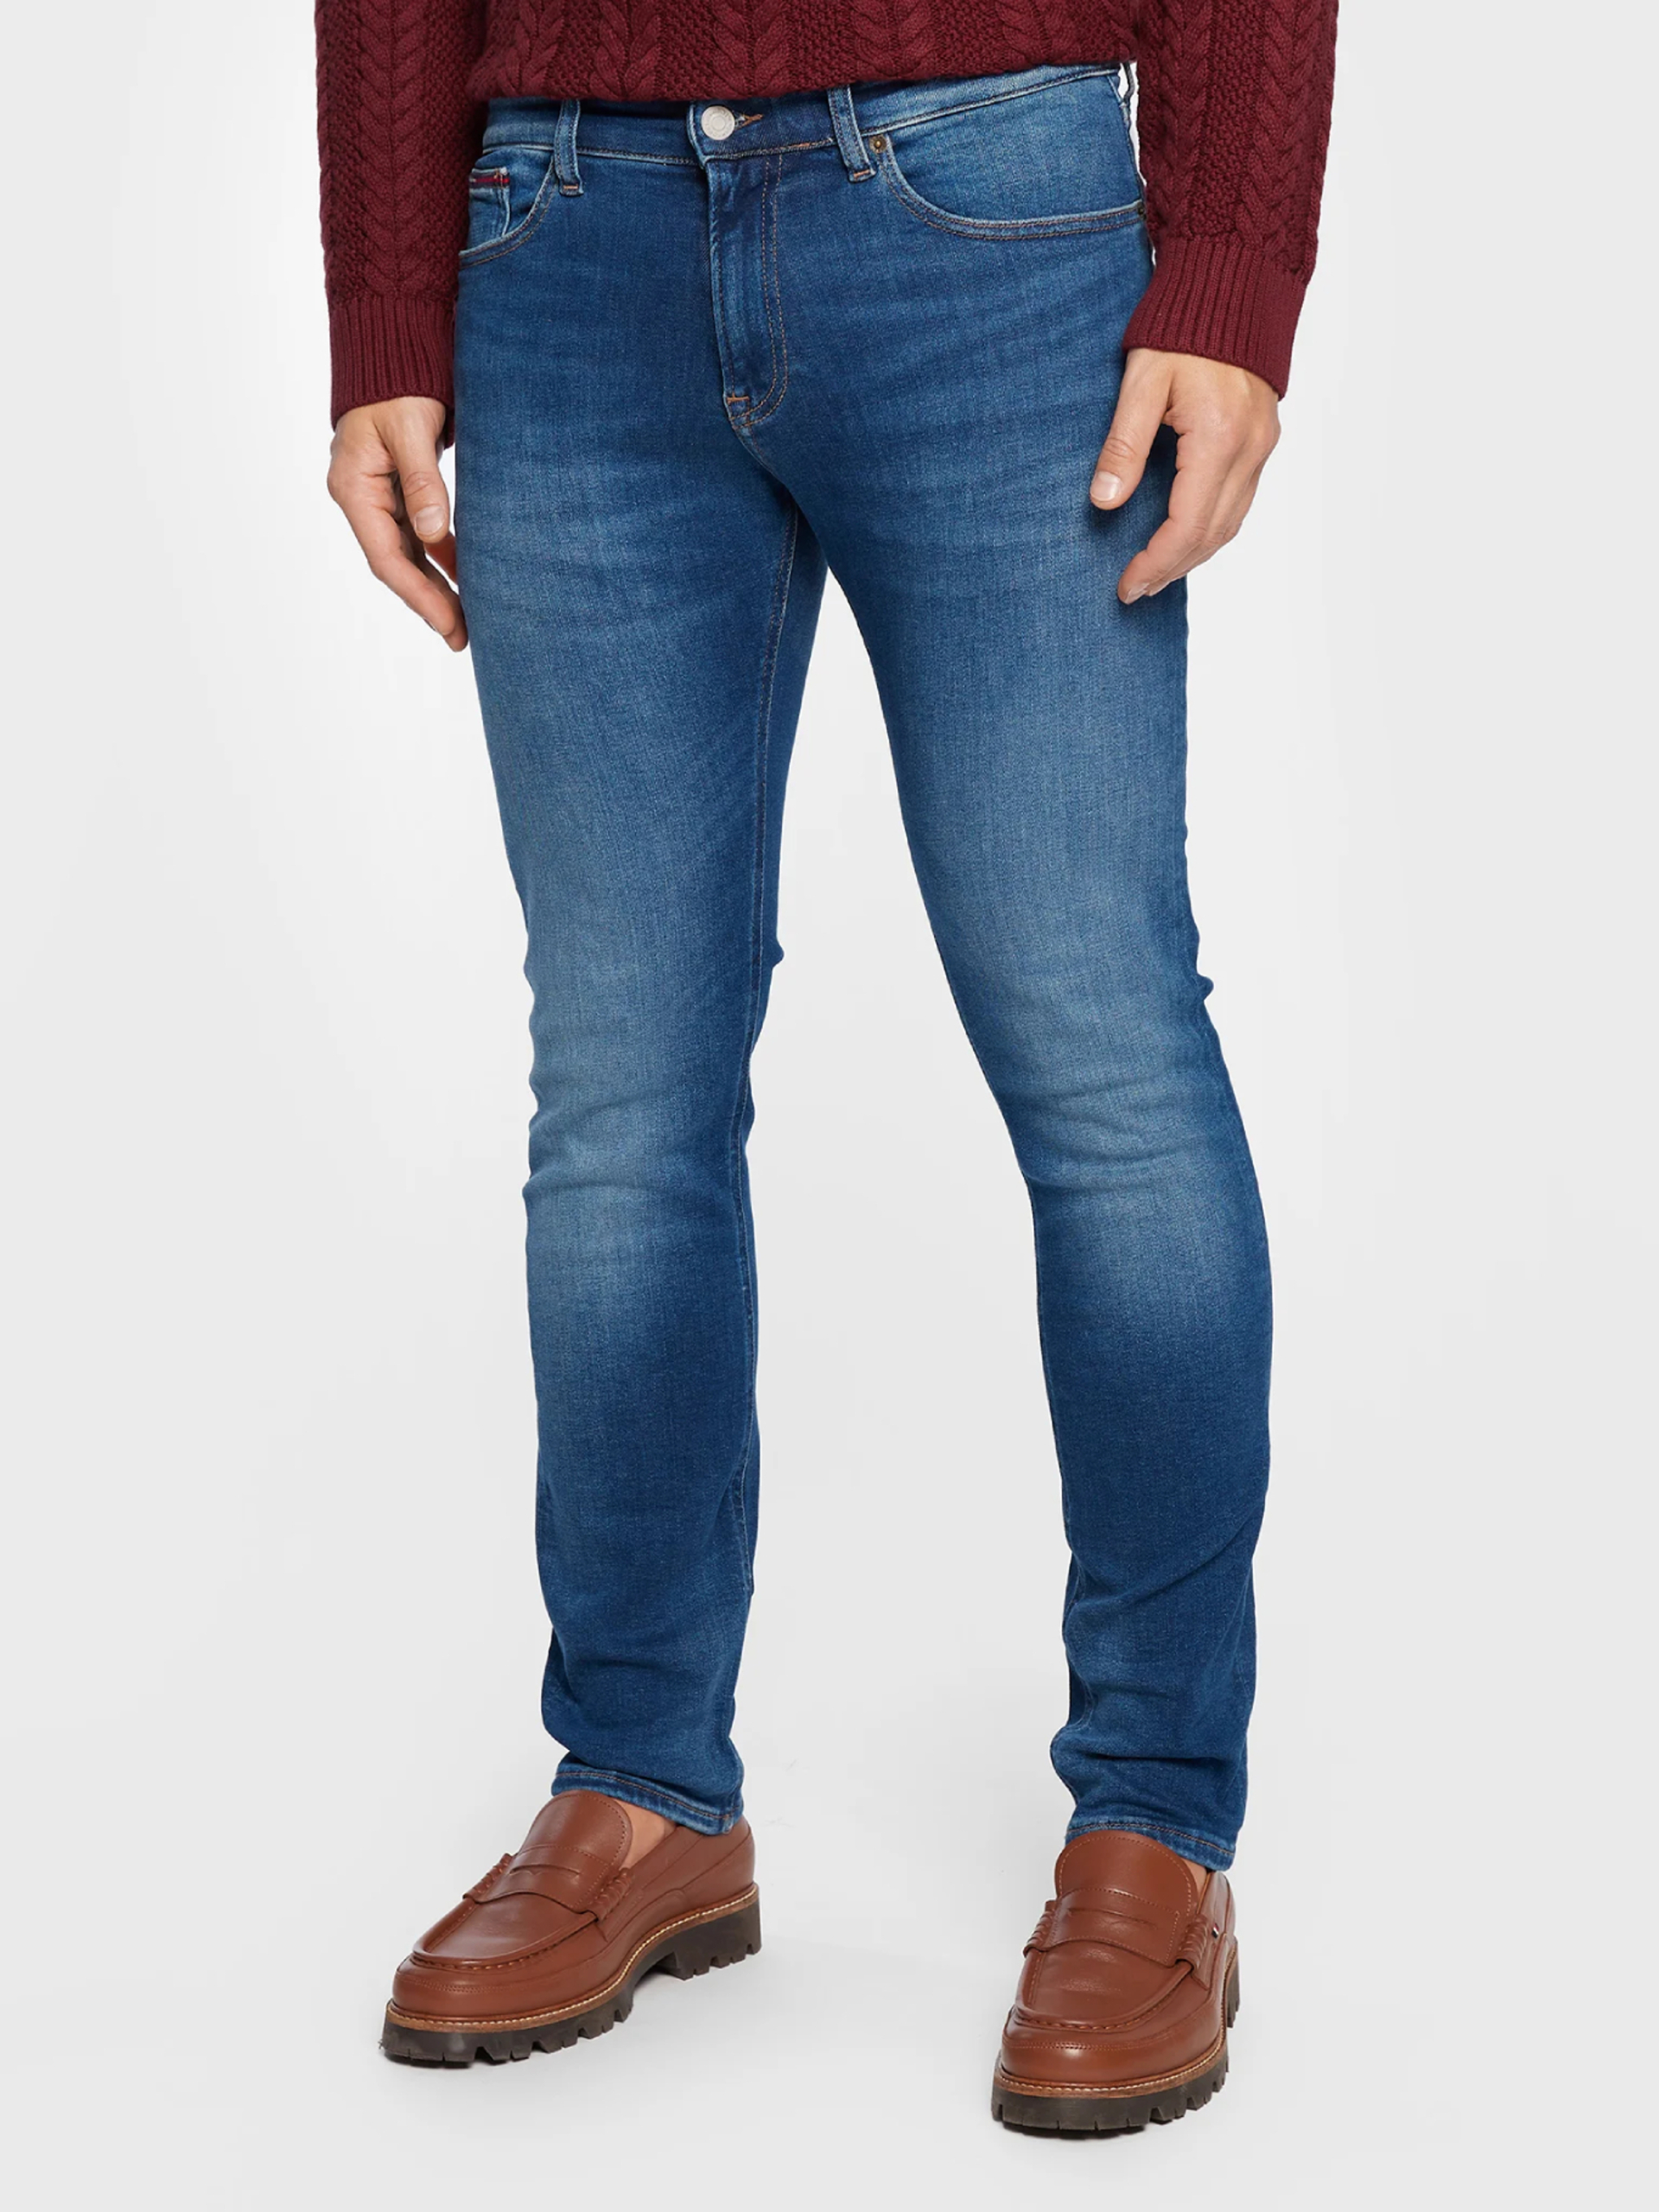 Tommy Jeans pánské modré džíny - 34/34 (1A5)